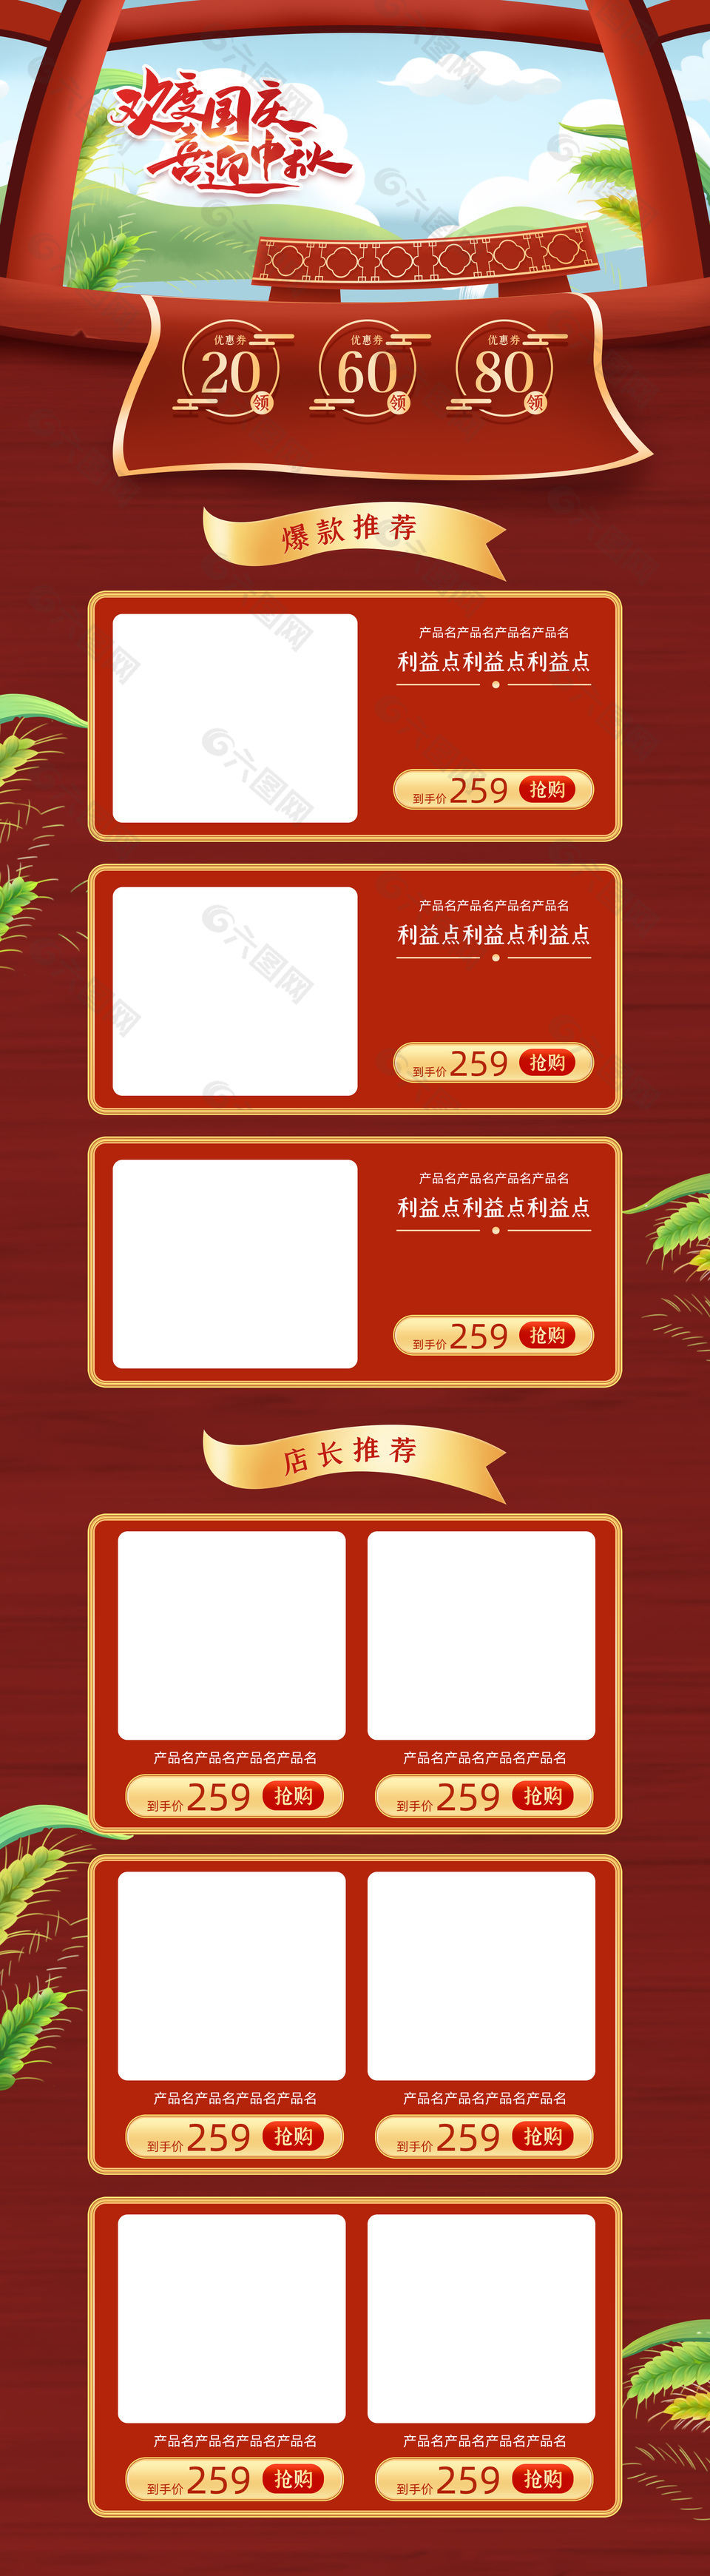 中秋国庆电商爆款推荐手机端红色模板设计